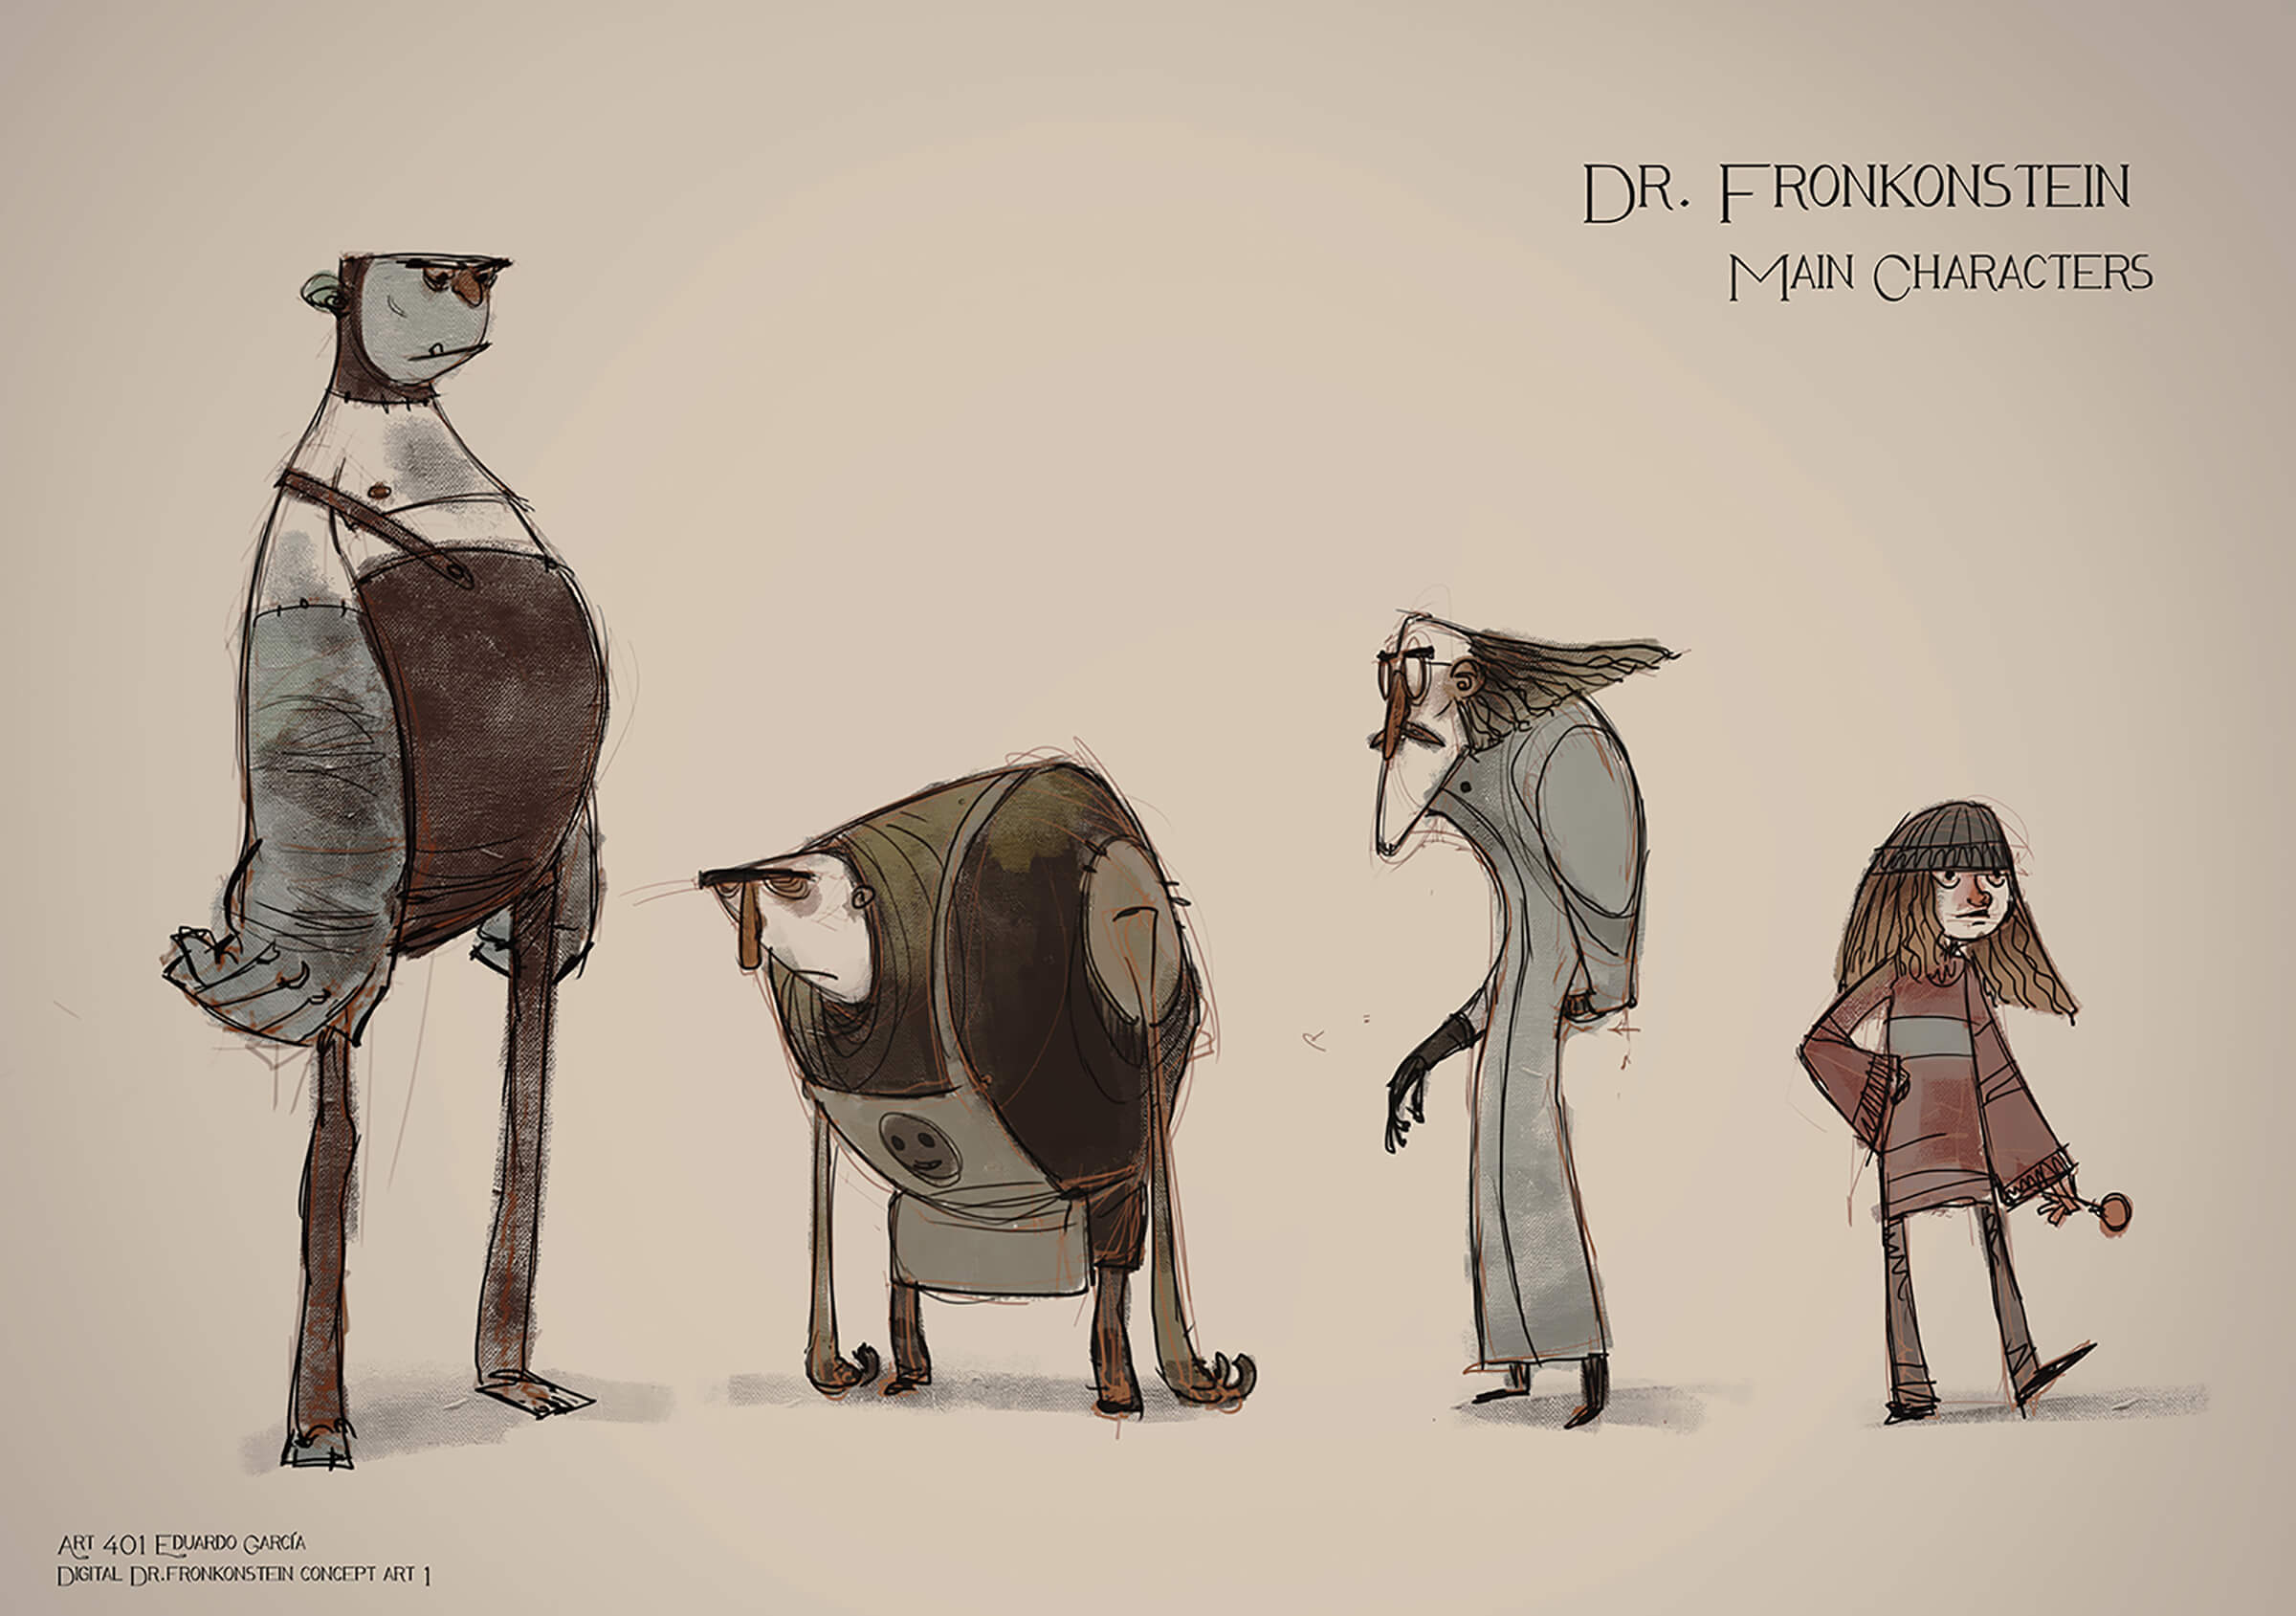 Bocetos conceptuales de personajes, incluido un monstruo alto, un asistente encorvado, un científico loco y una chica joven y moderna.